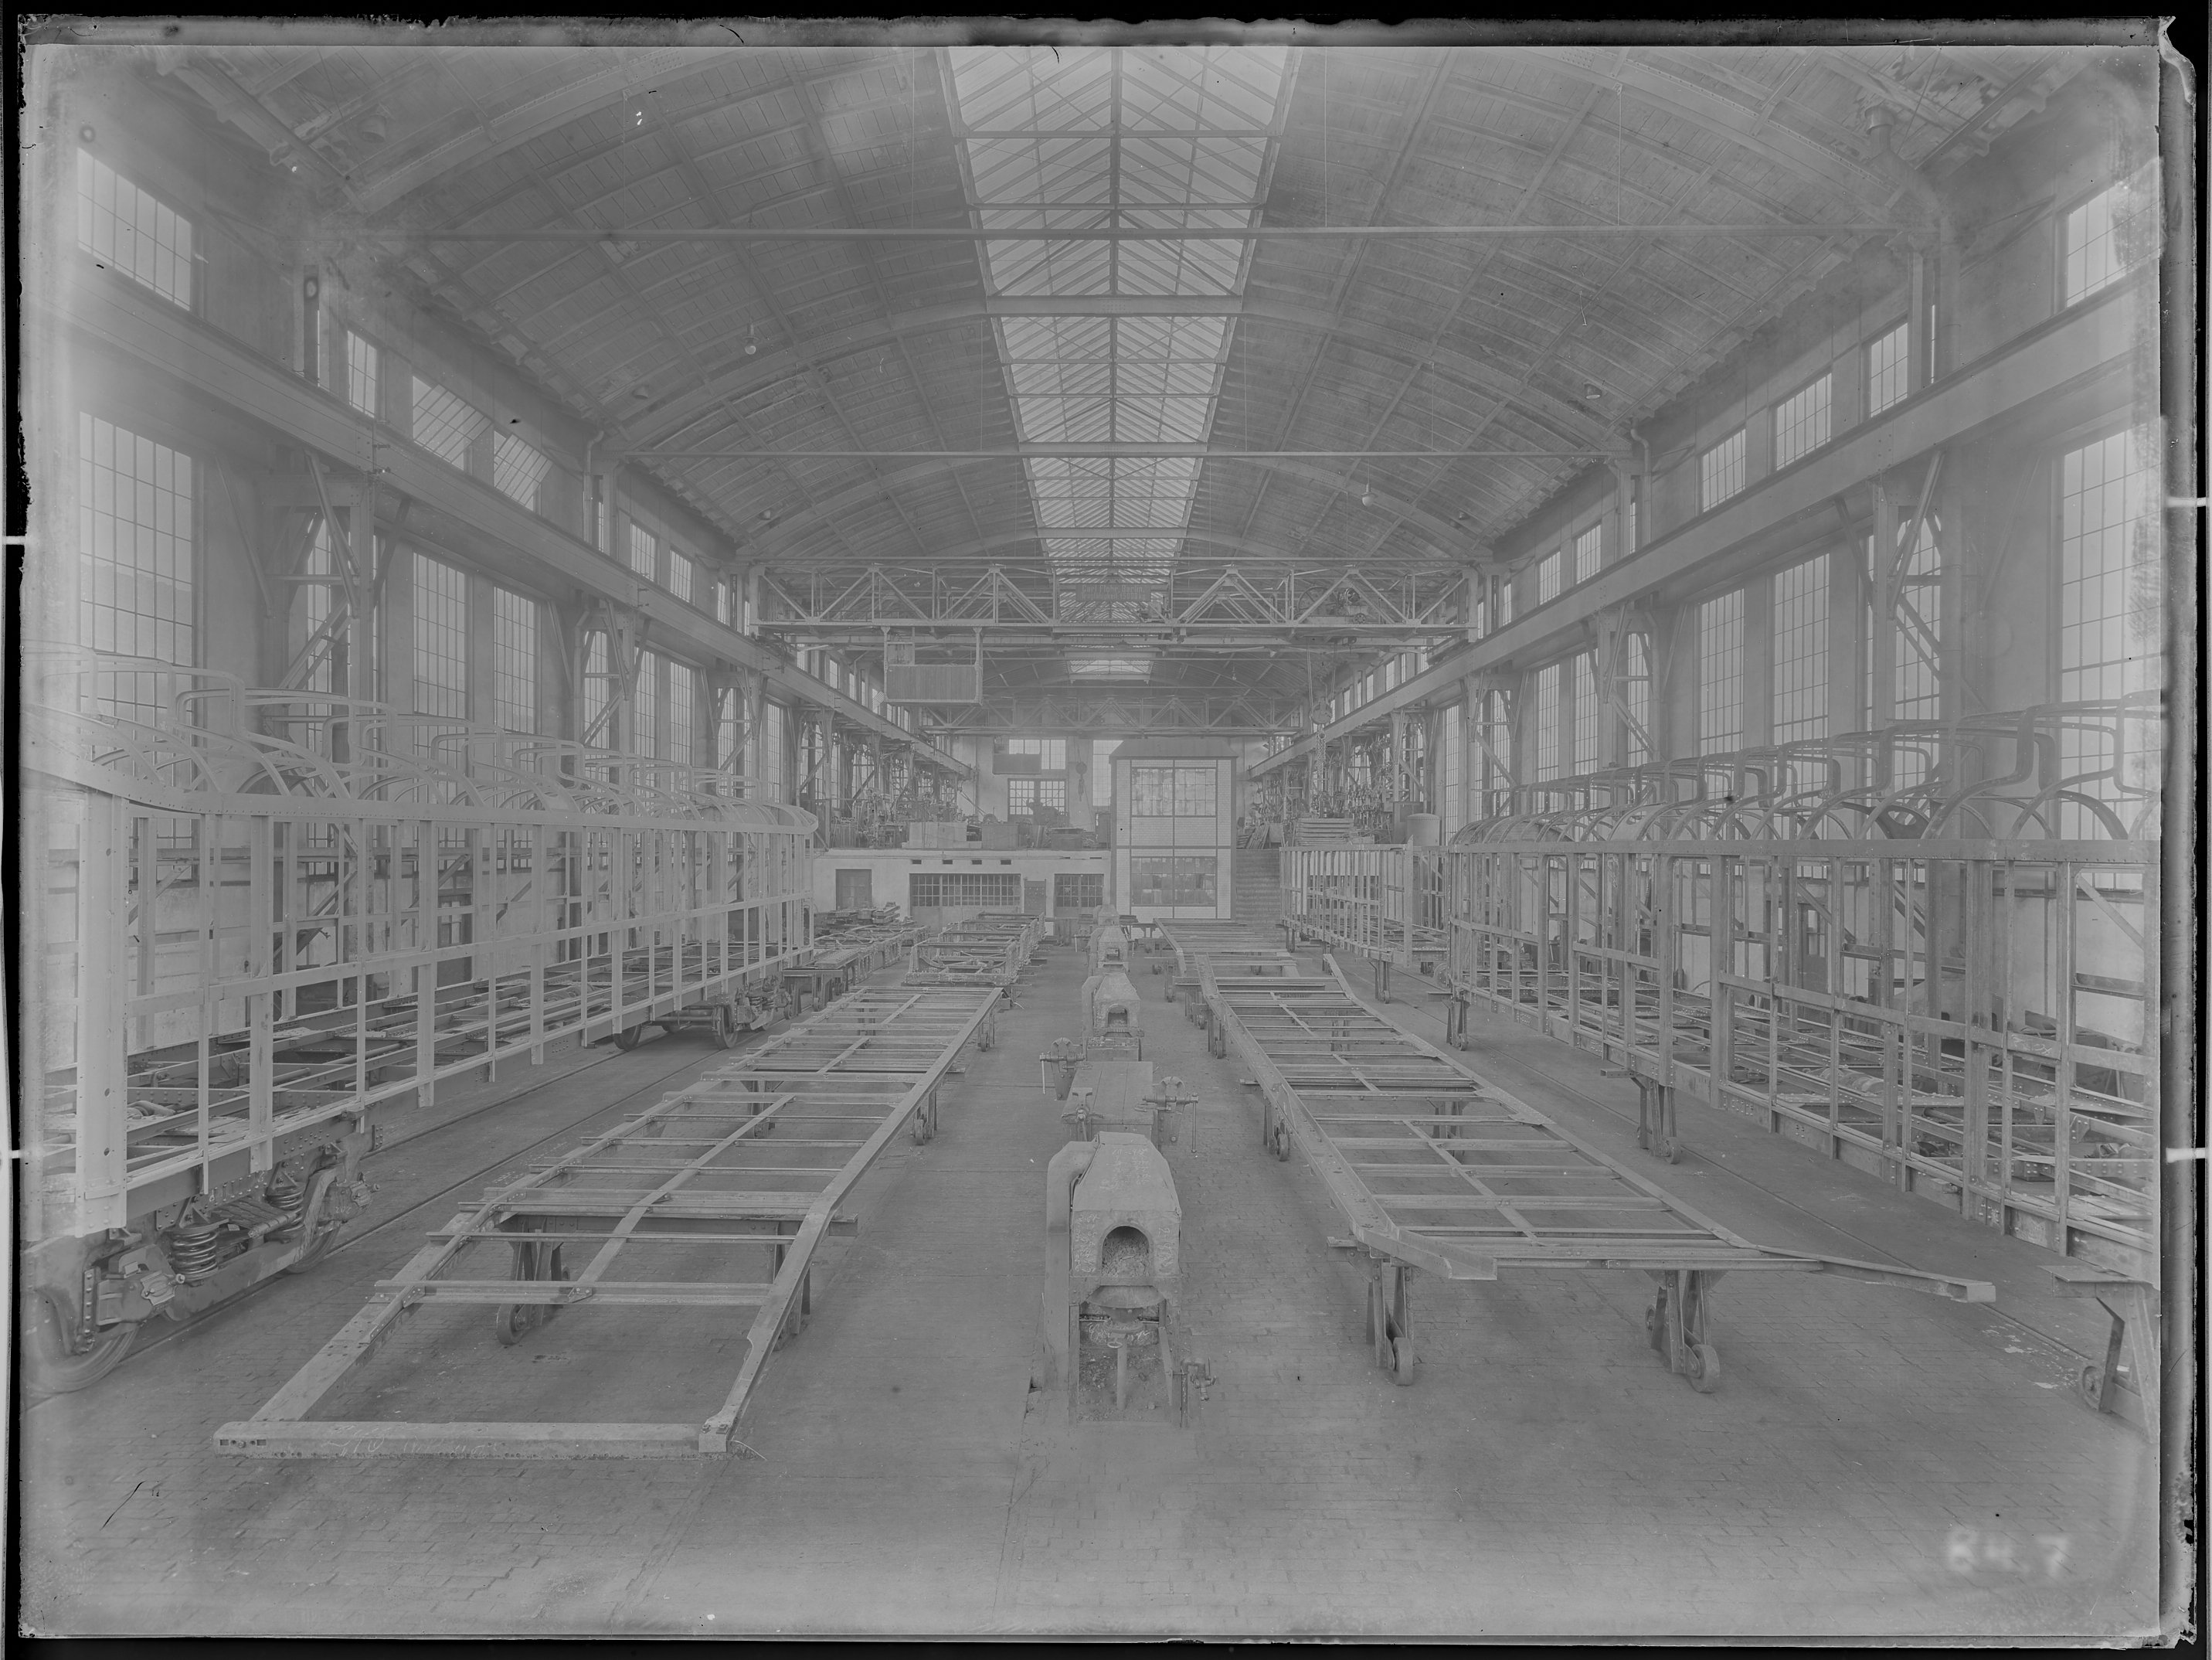 Fotografie: Gestellbau der Waggonfabrik Görlitz Aktiengesellschaft (Innenansicht), Werkhalle mit Kastengerippen und Untergestellen, 1920. (Verkehrsmuseum Dresden CC BY-NC-SA)